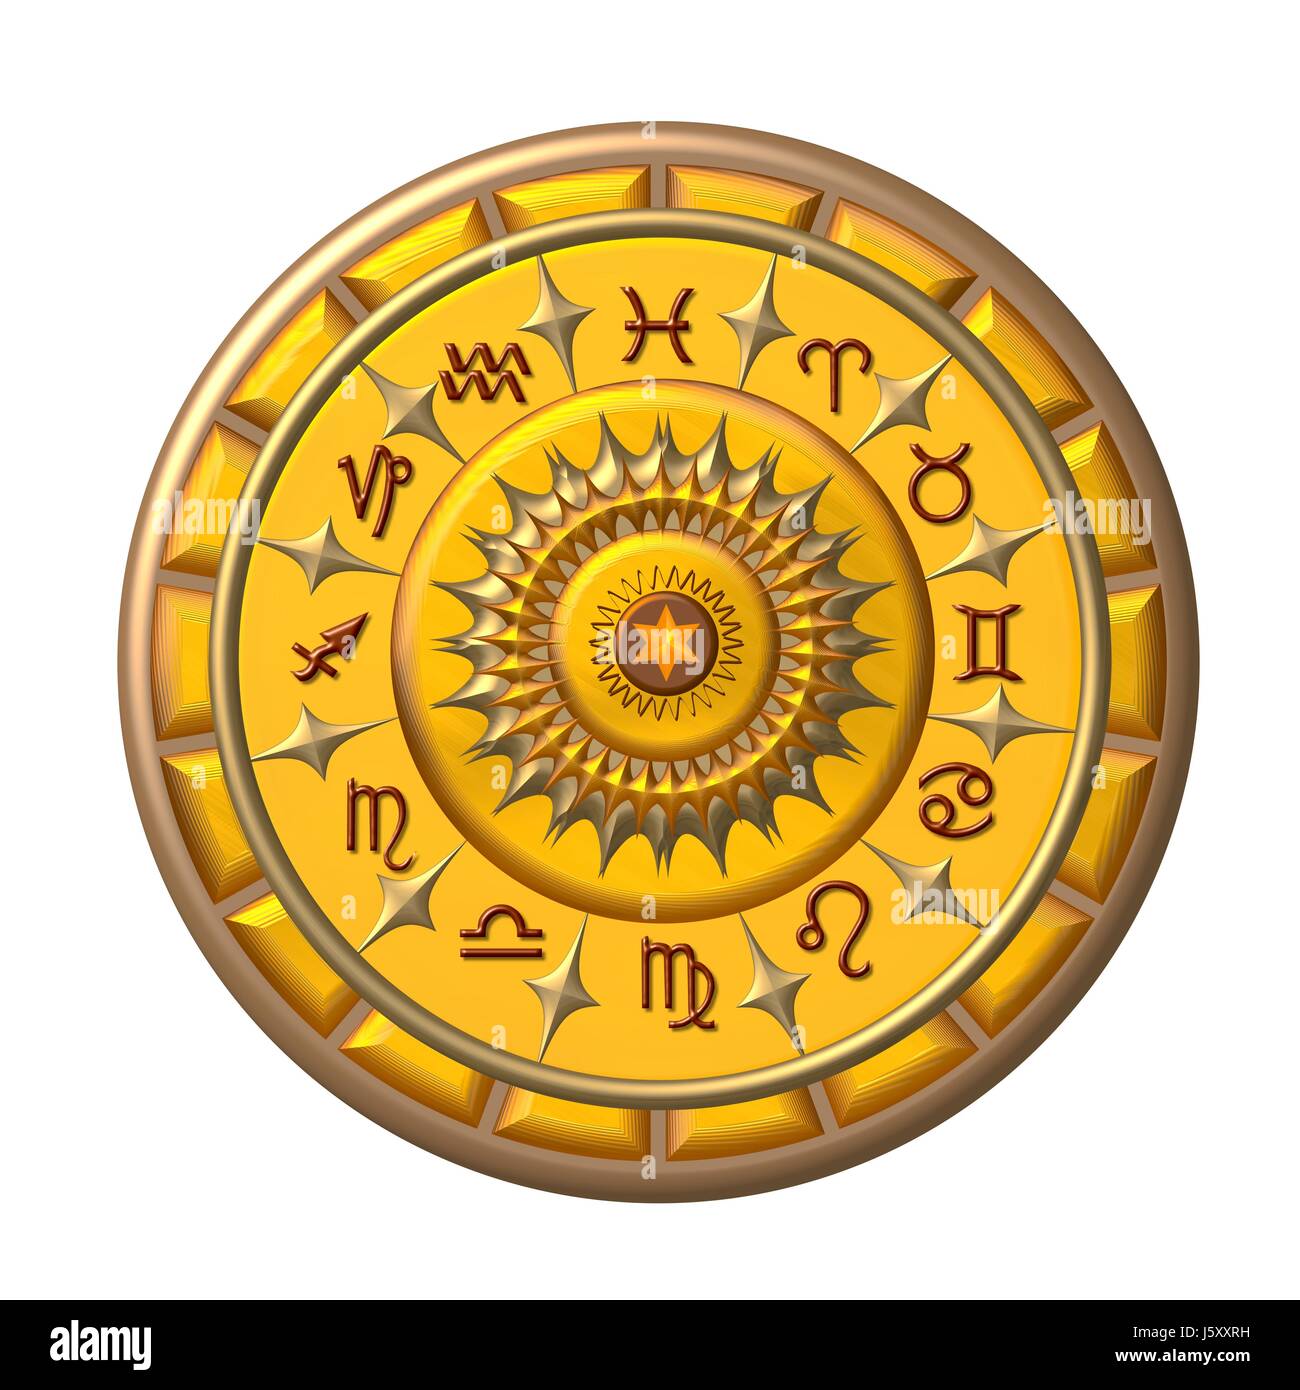 Futuro astrologia oroscopo zodiacale segno dello zodiaco astronomia Leone del futuro cat Foto Stock